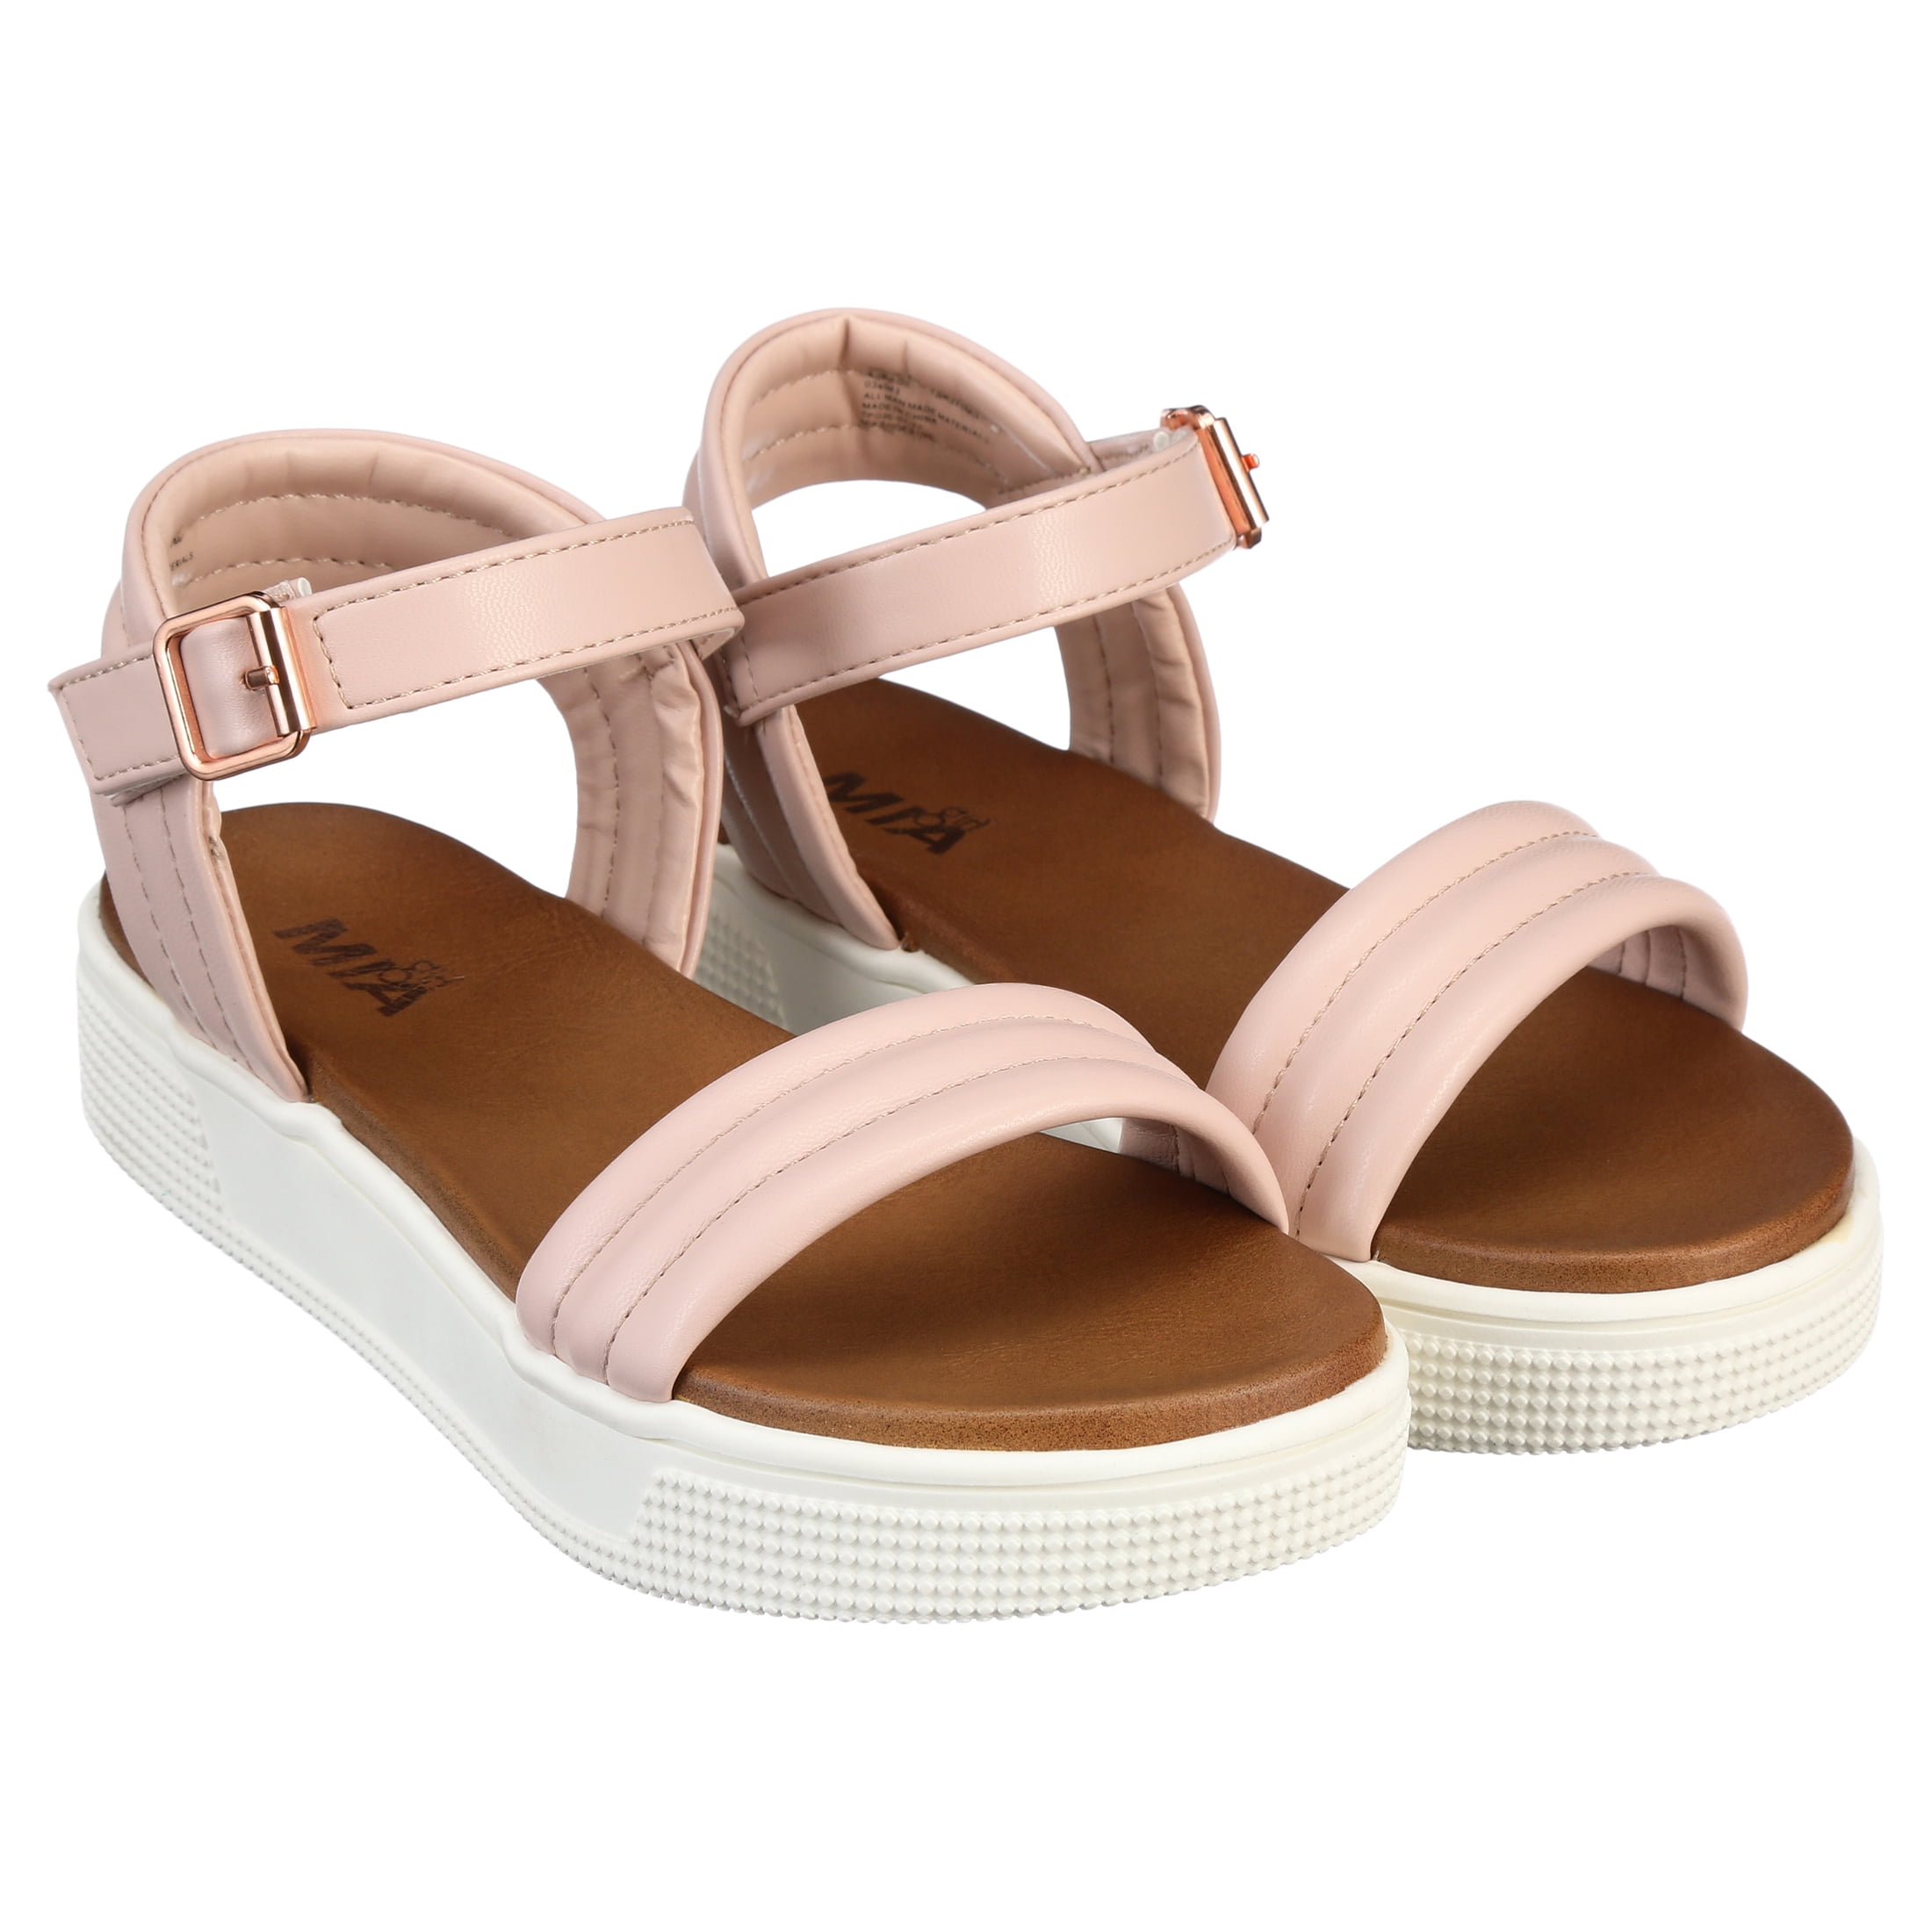 arkiv lægemidlet pubertet Girls Mia Shoes Platform Sandal, Sizes 11-5 - Walmart.com